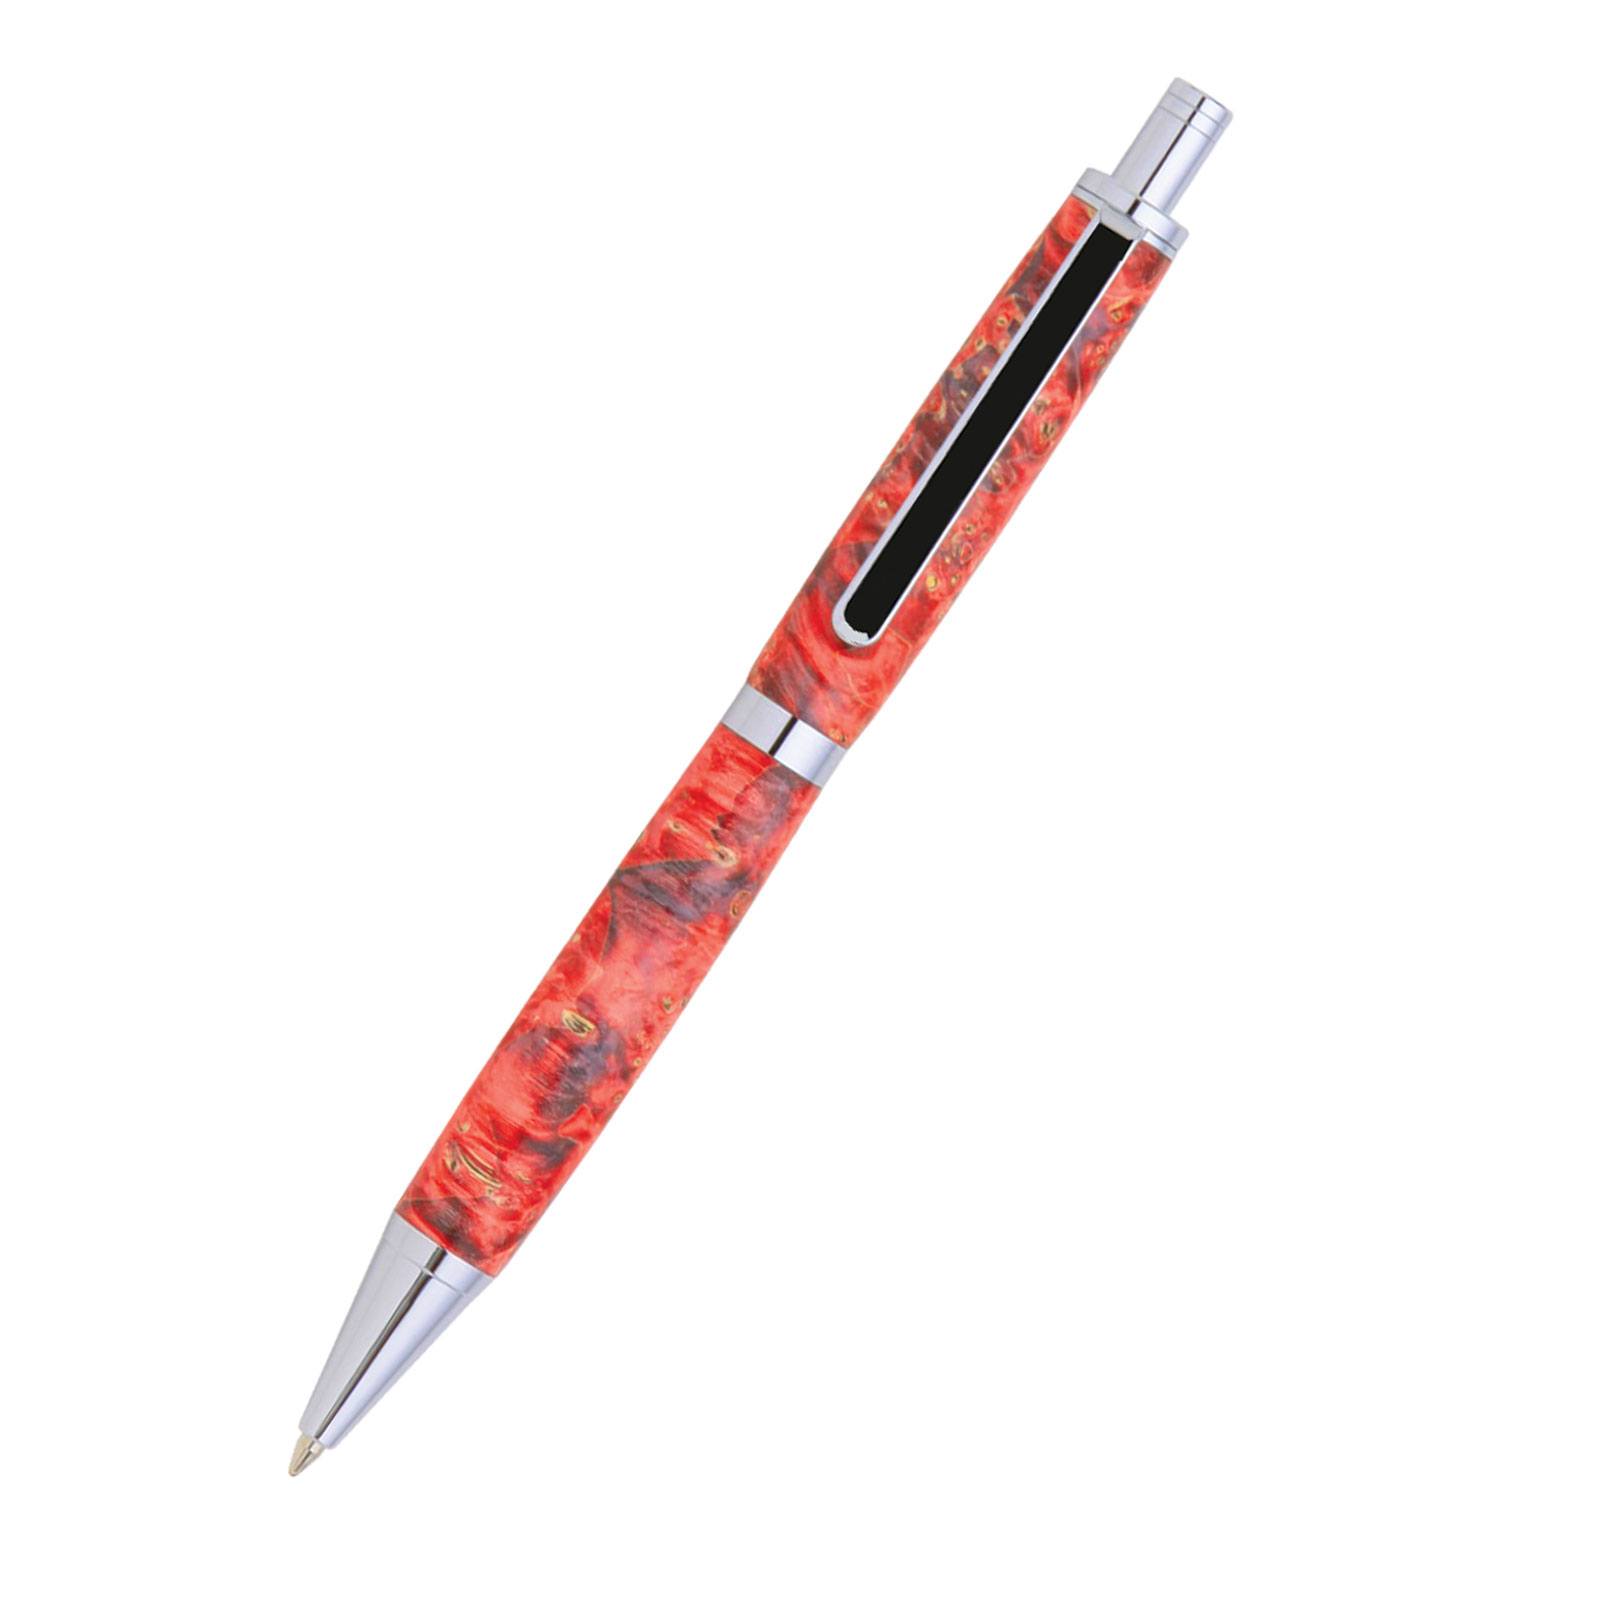 8 Slimline Pro Click Pen Kit Starter Set at Penn State Industries